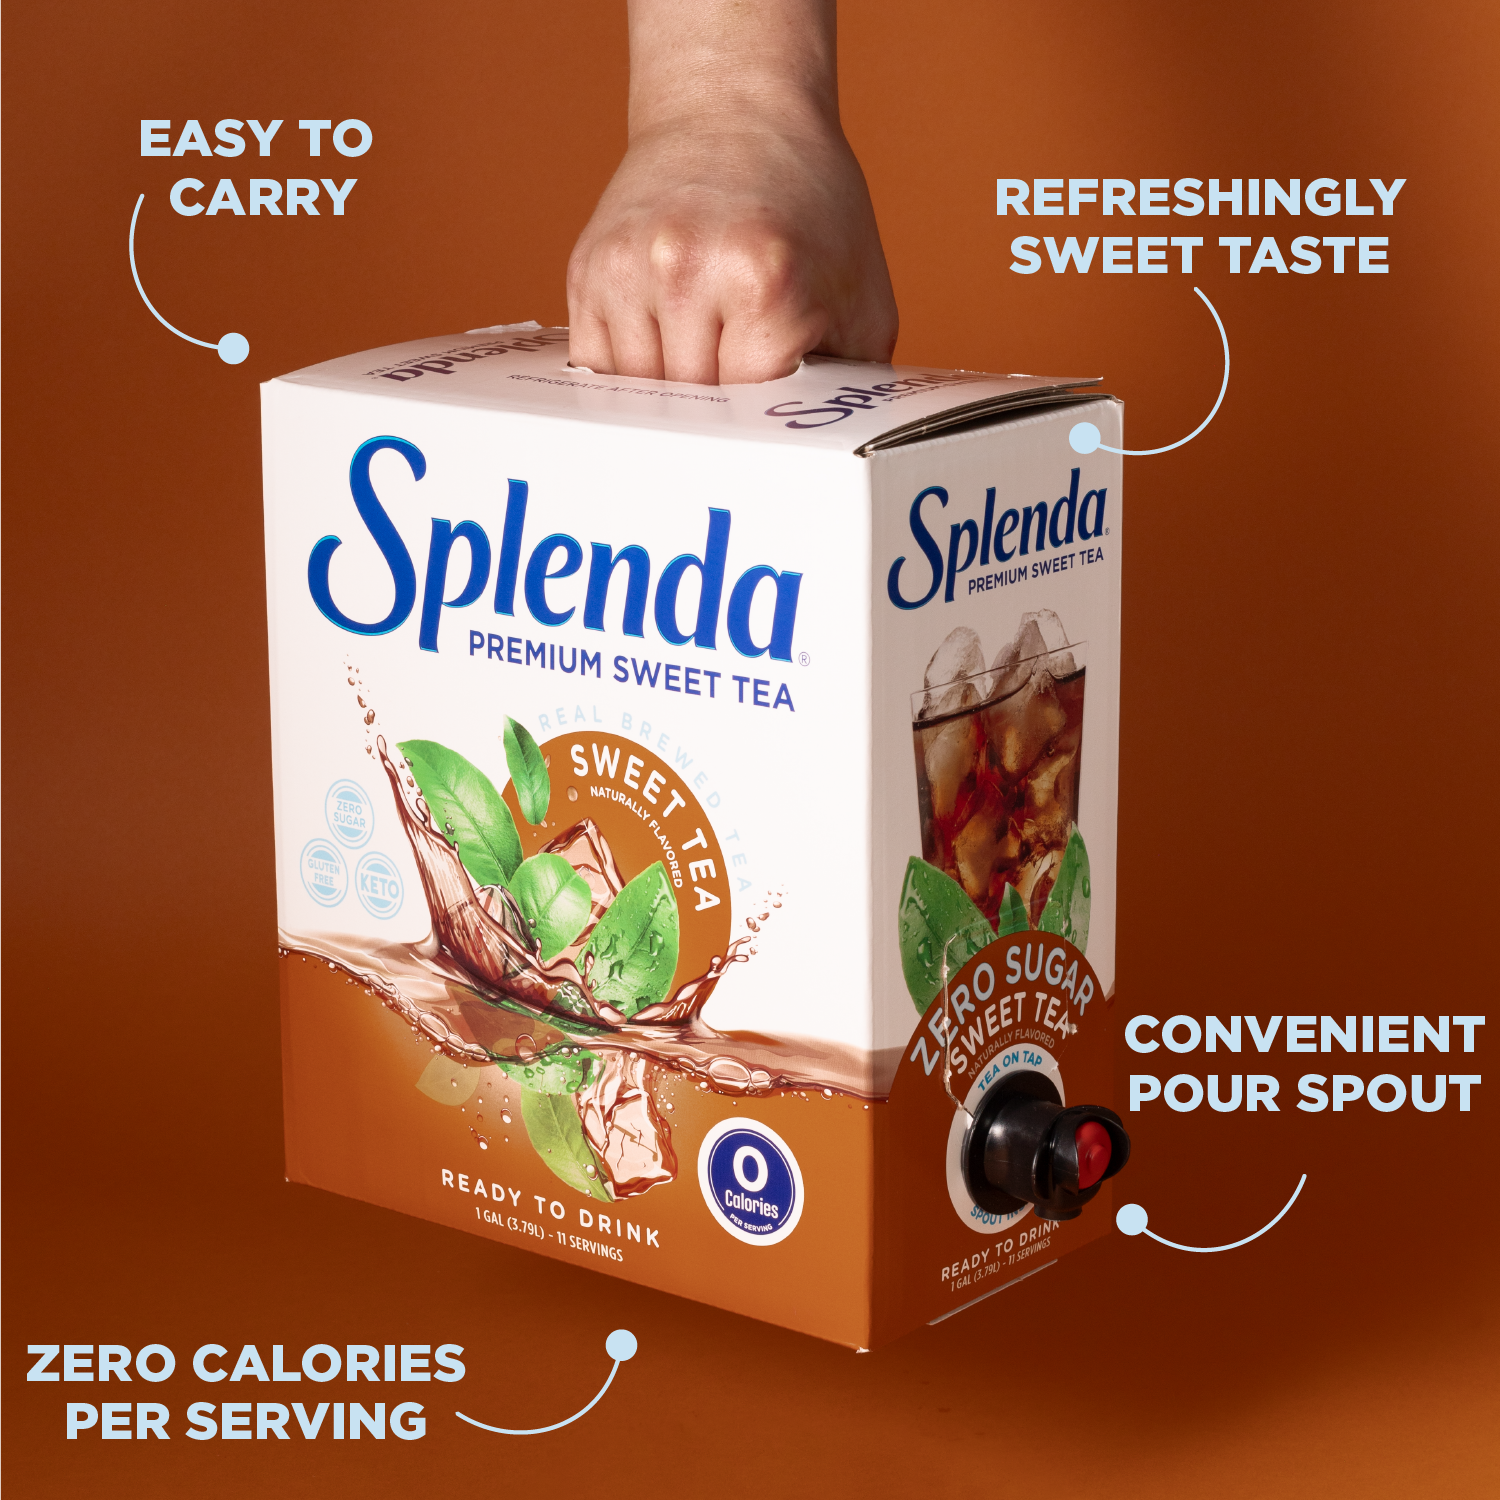 Splenda Sweet Tea - Easy To Carry